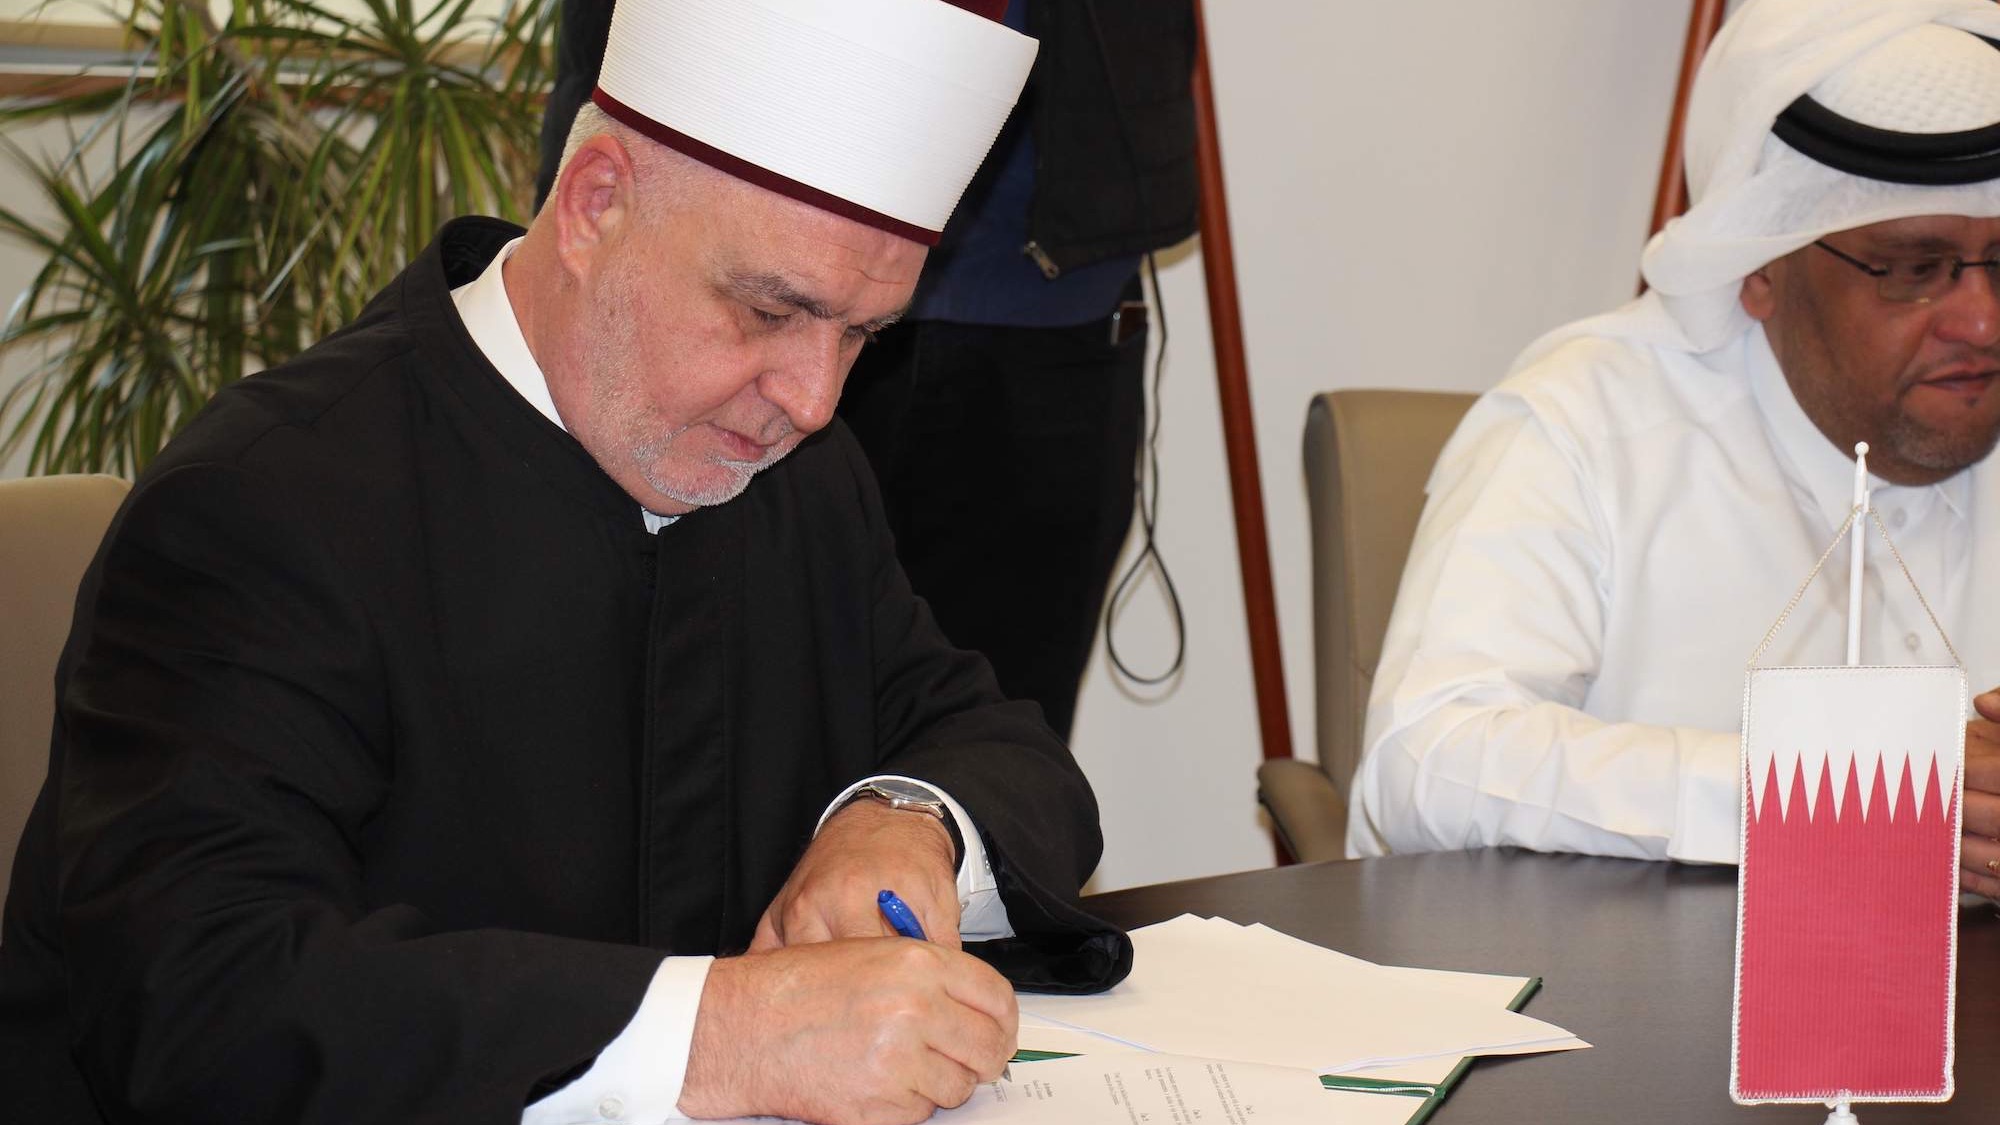 Reisul-ulema potpisao Ugovor za izvođenje radova na objektu u ulici Mula Mustafe Bašeskije